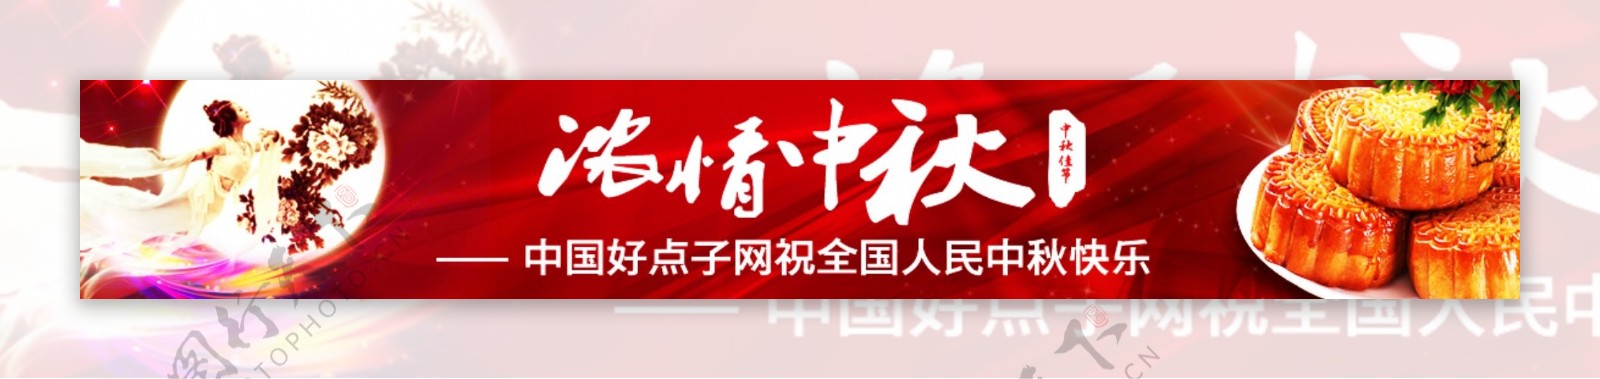 中秋节节日庆祝网页广告psd素材